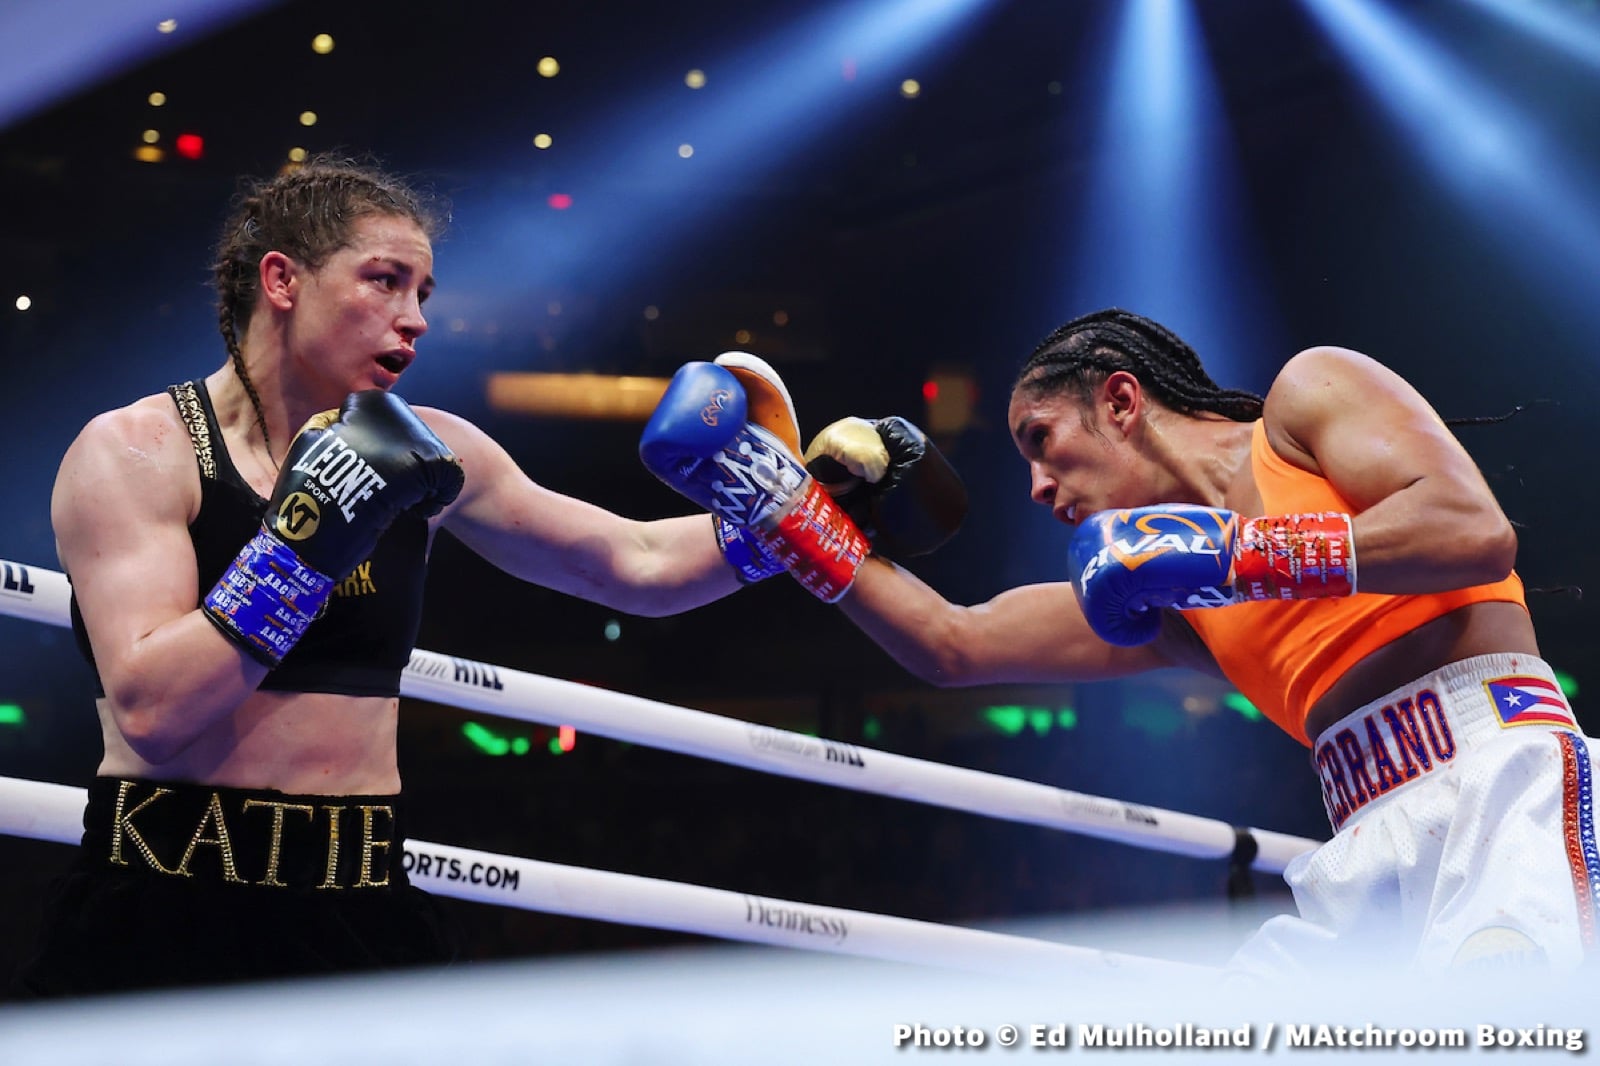 Amanda Serrano boxing image / photo